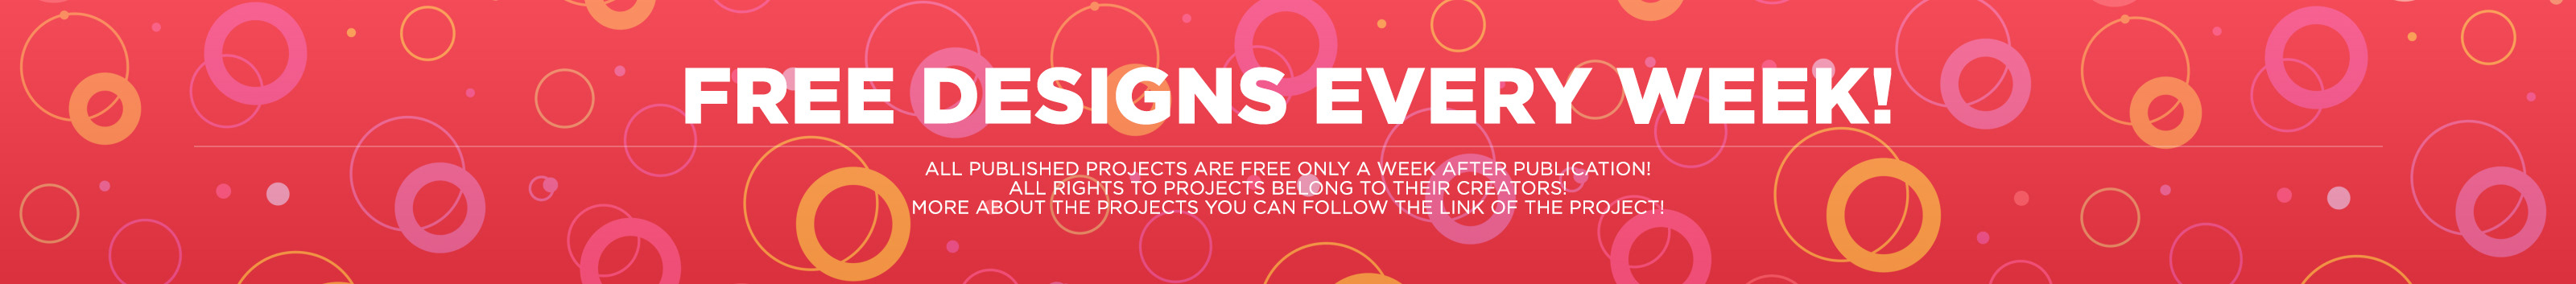 Profil-Banner von Free Designs Every Week!